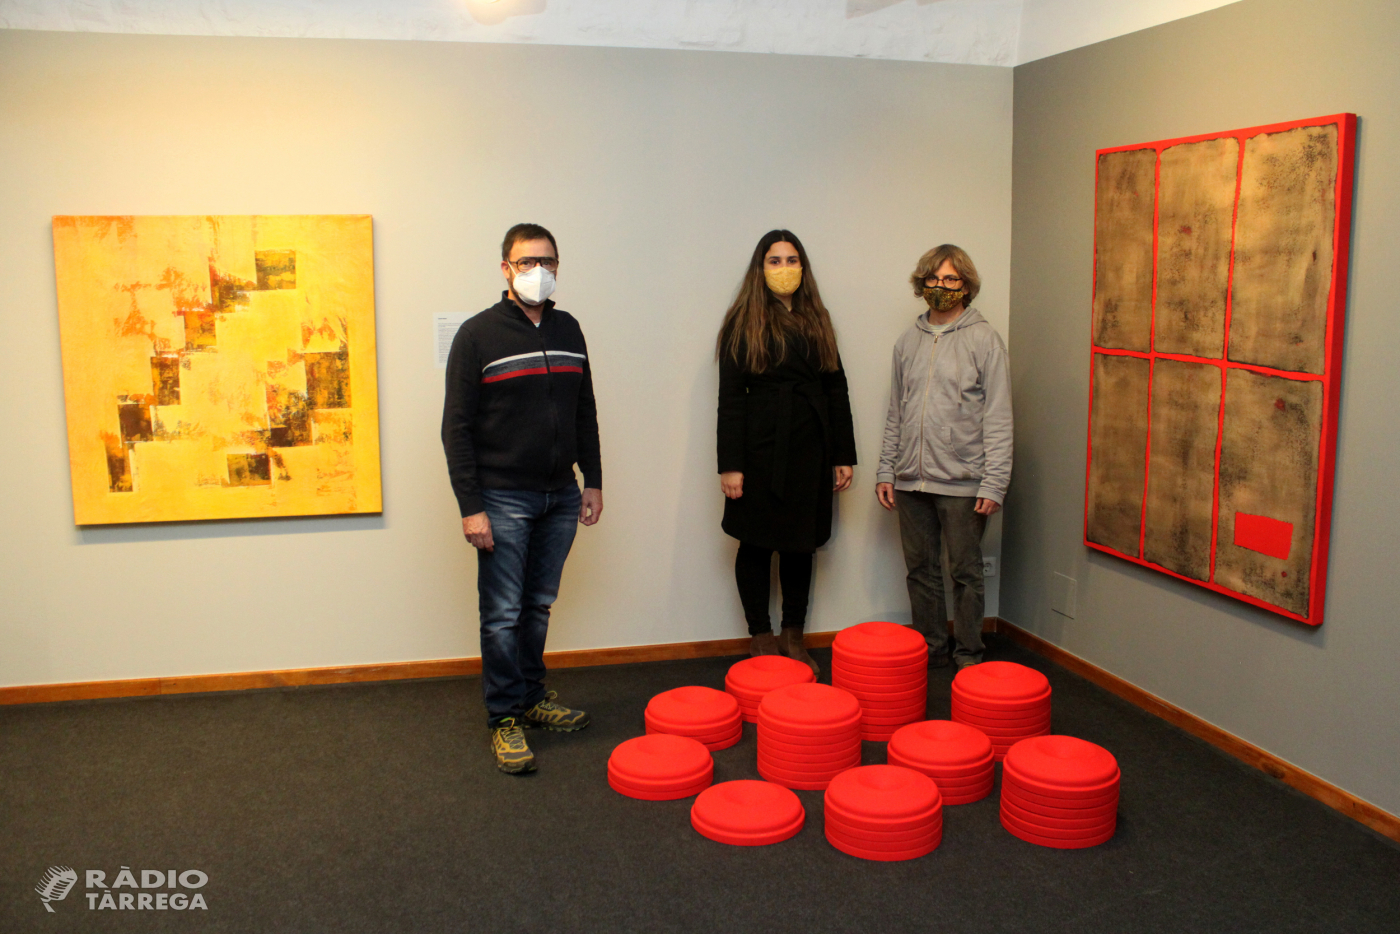 Una vintena d’artistes homenatgen a títol pòstum la galerista Alba Vilamajó mitjançant una mostra col·lectiva al Museu Tàrrega Urgell